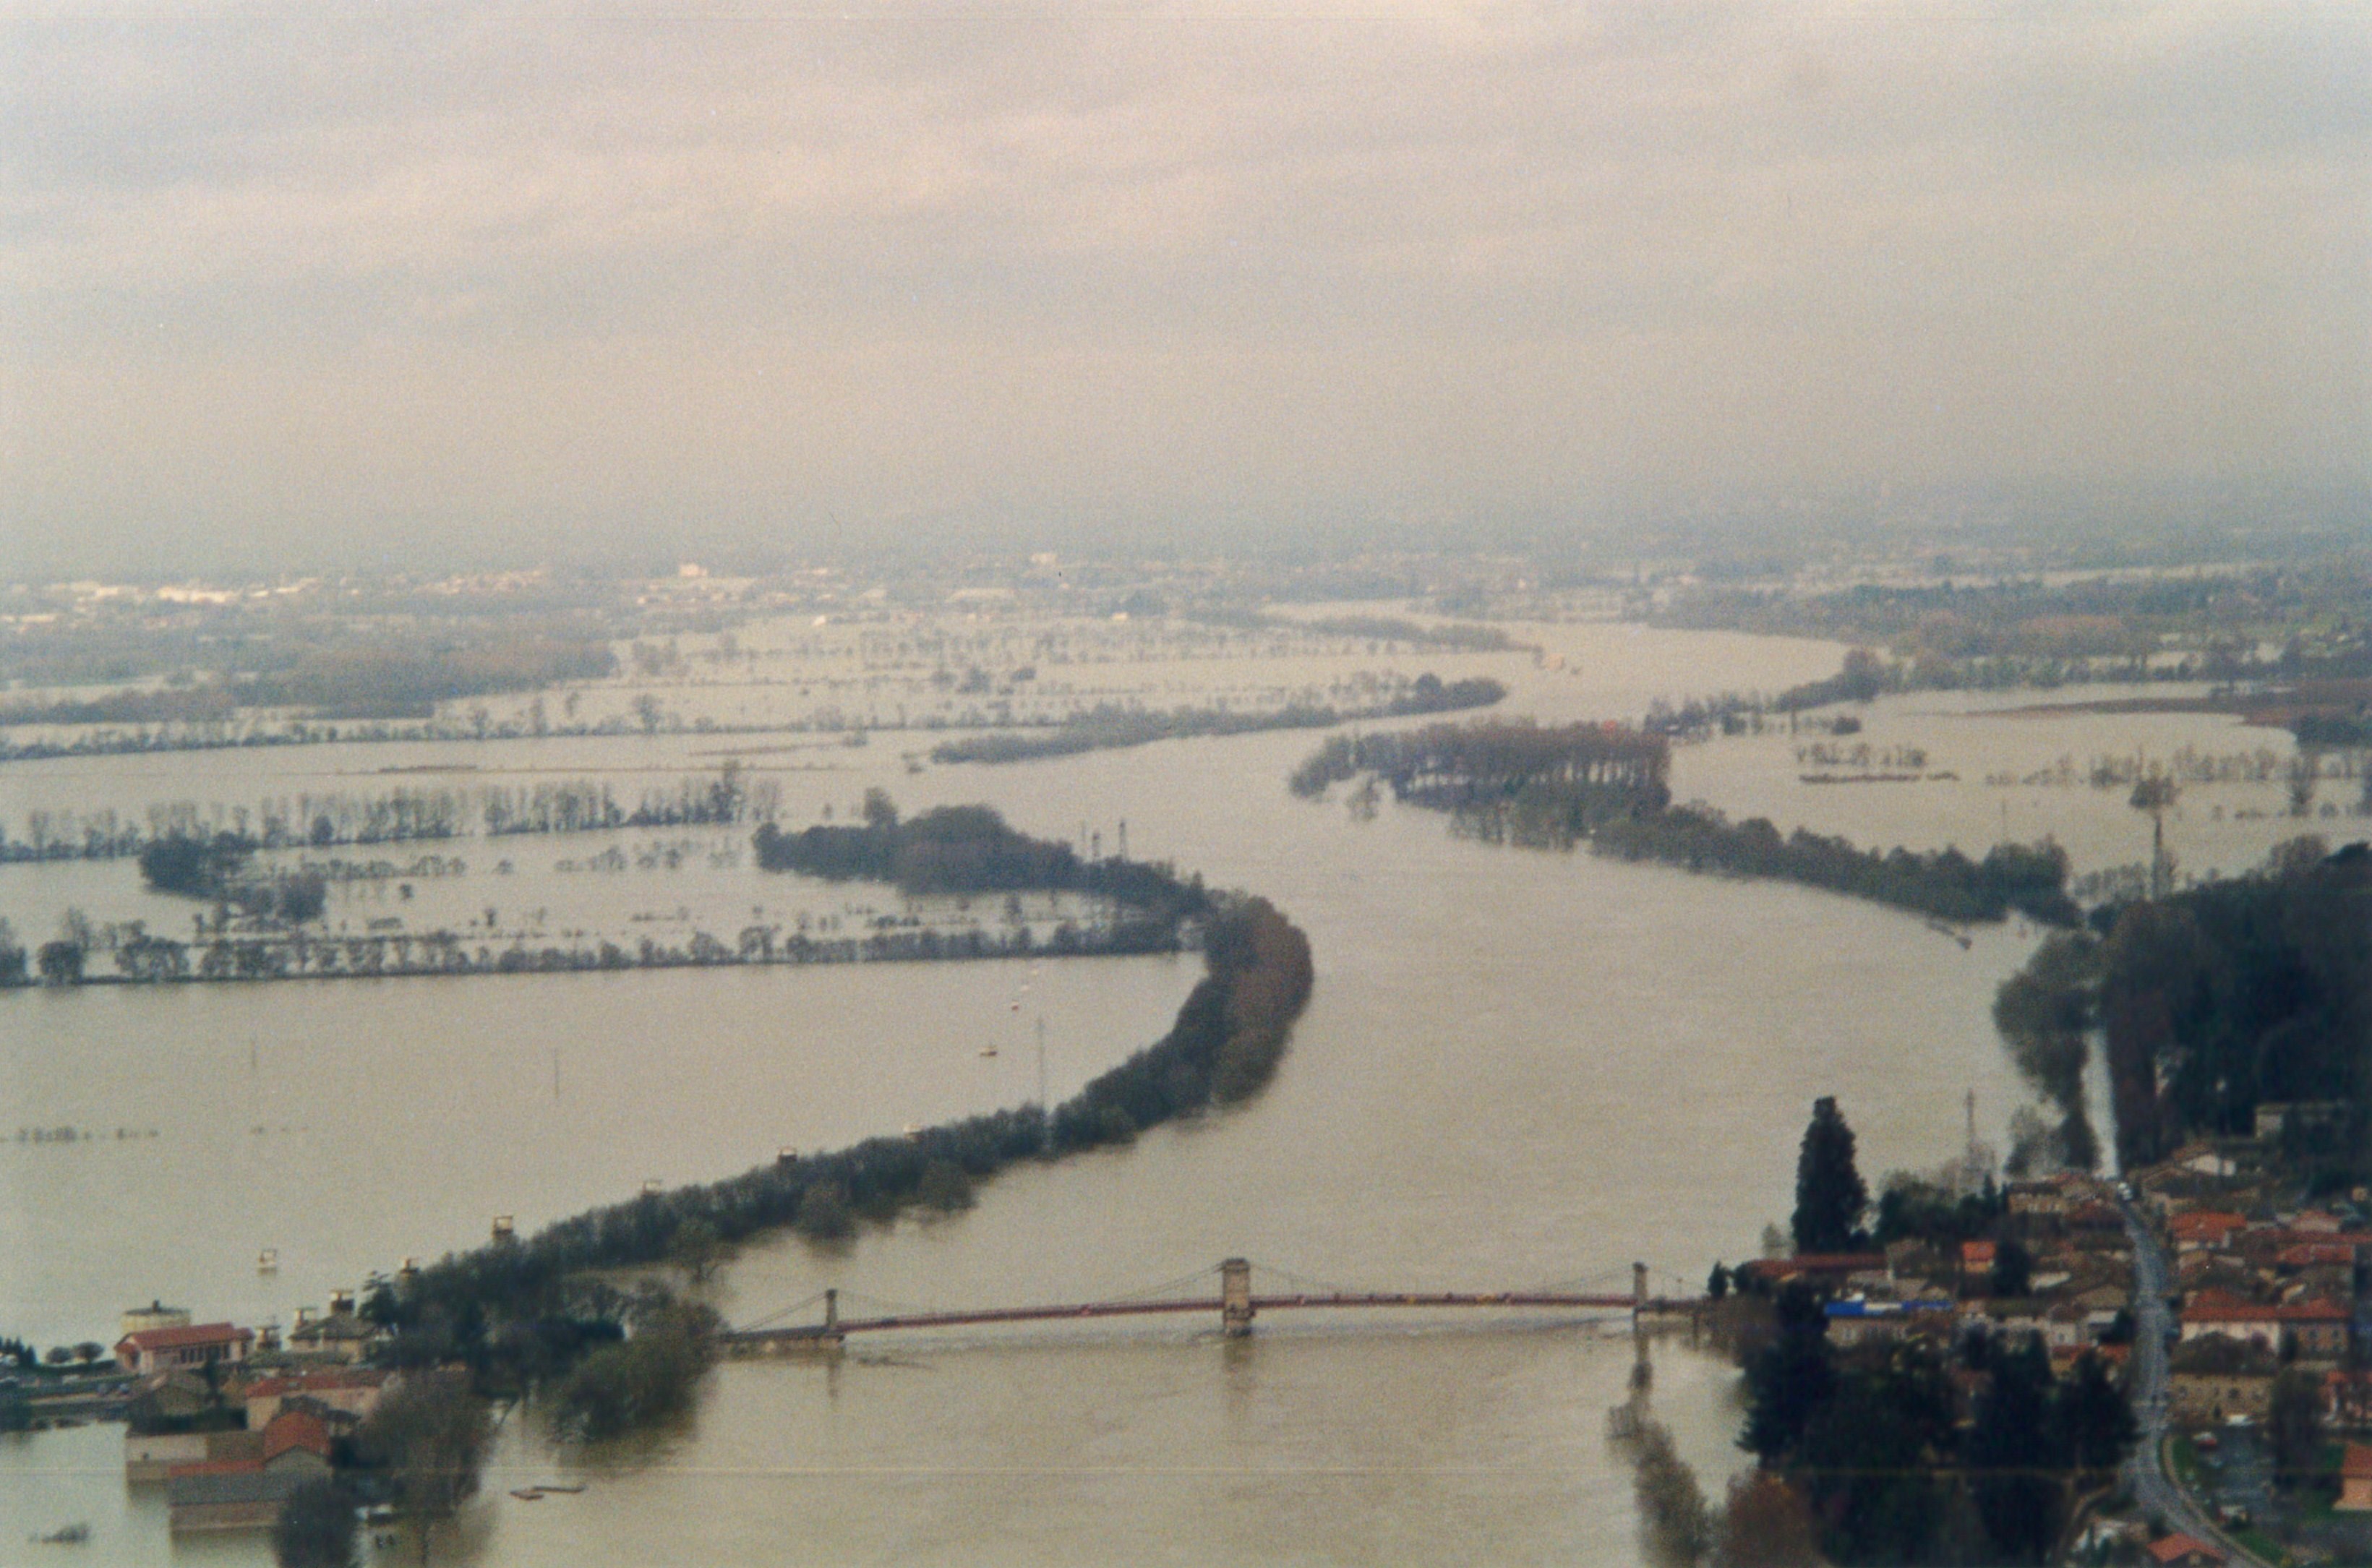 Crue de la Saône en 2001 à Beauregard